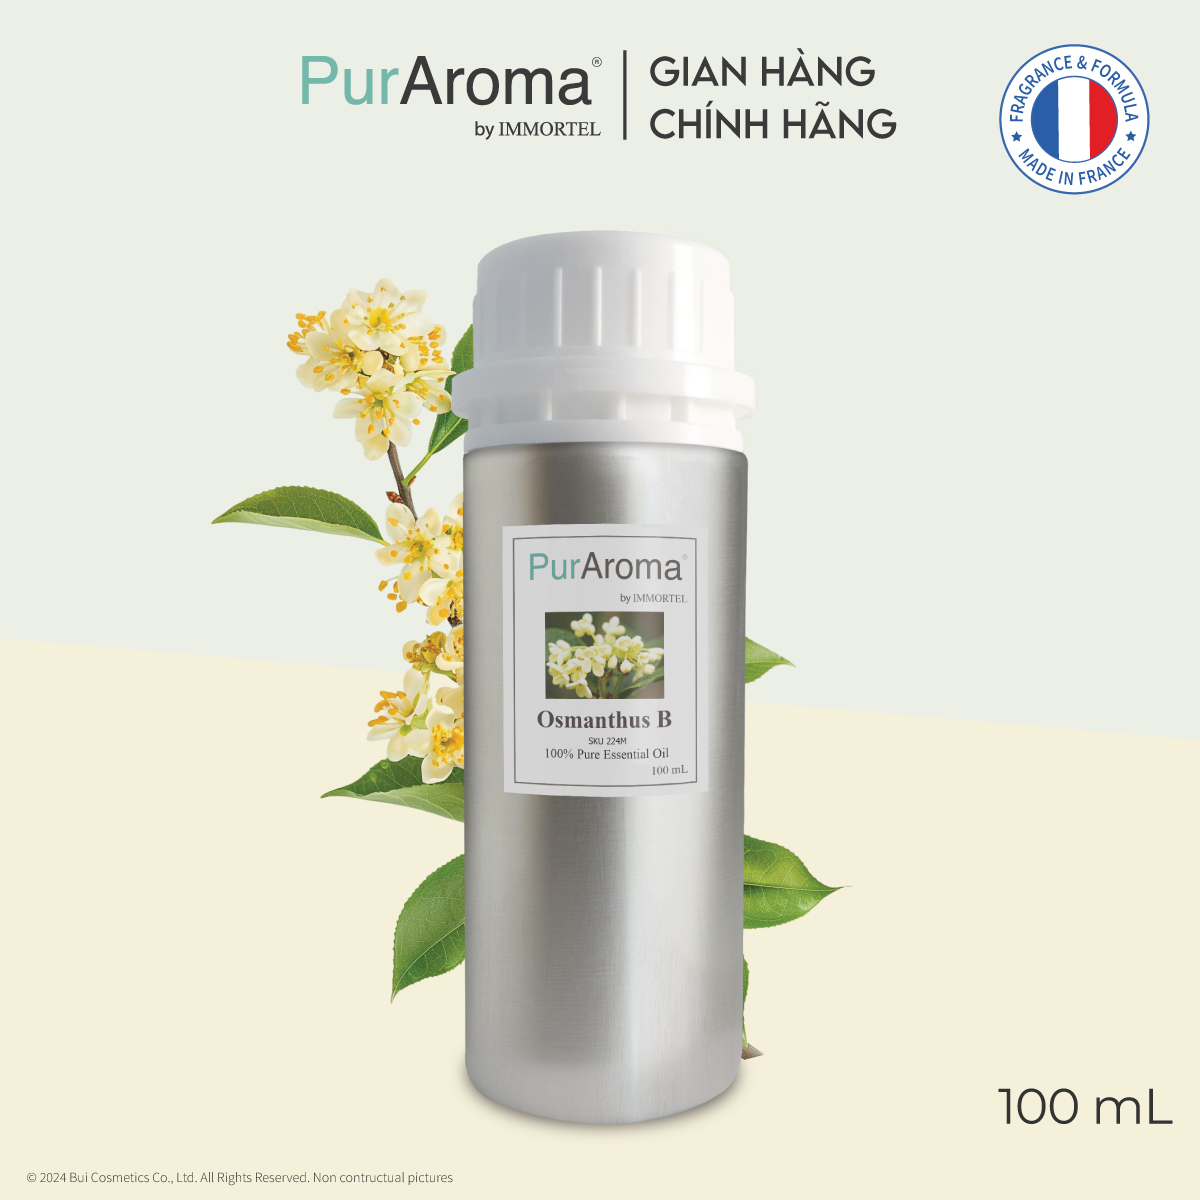 (Đậm Đặc | Chai Lớn) Tinh dầu nguyên chất PurAroma by IMMORTEL - HOA MỘC TÊ - Chính hãng Pháp